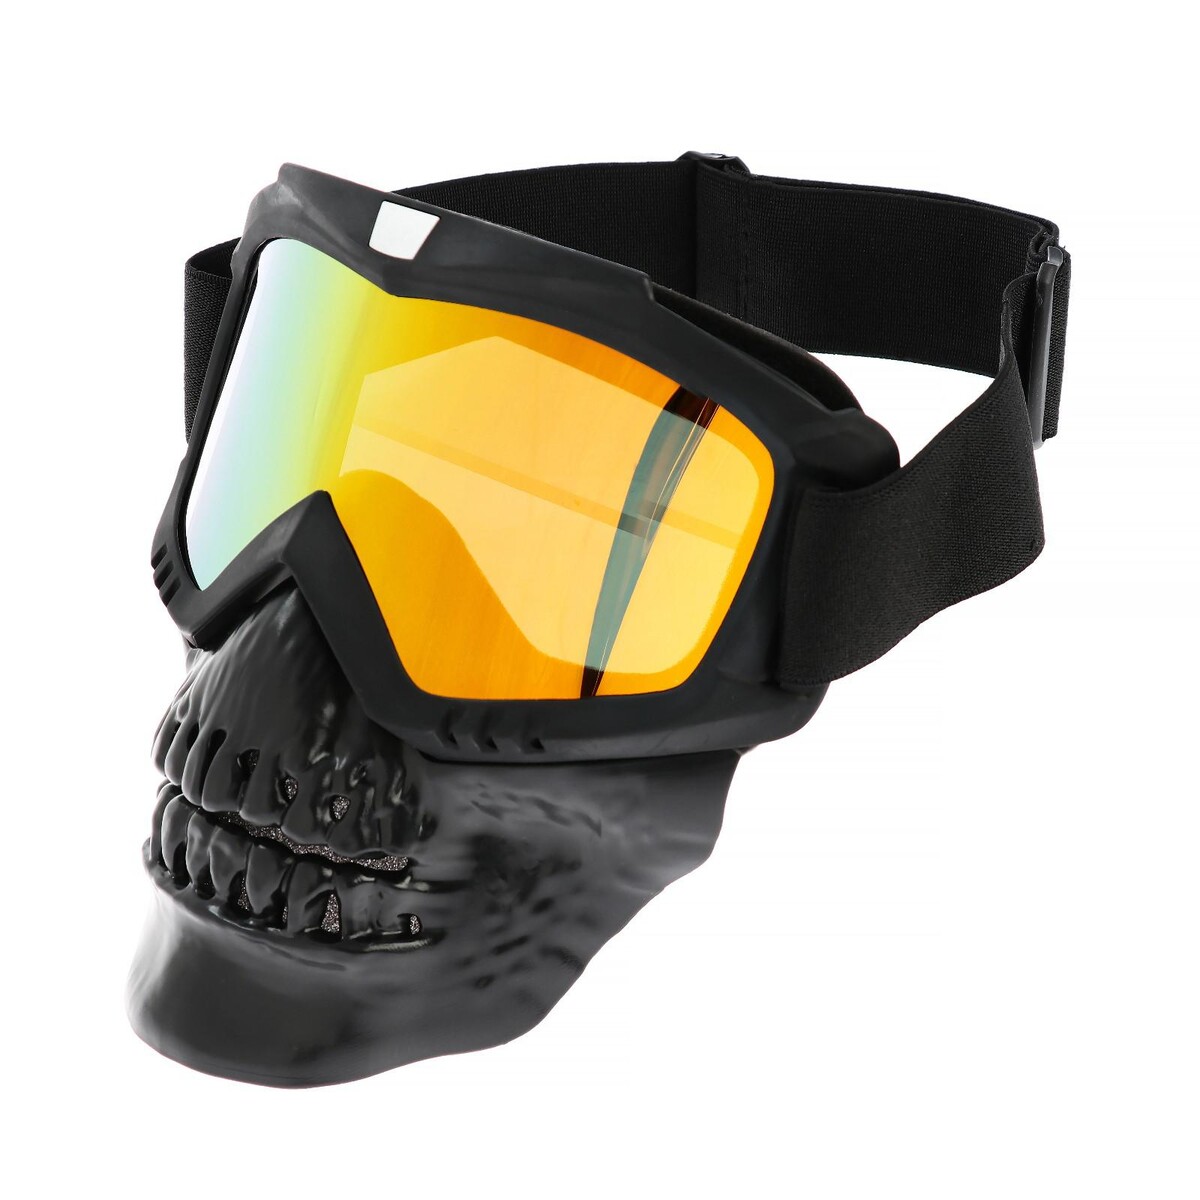 Очки-маска для езды на мототехнике, разборные, визор оранжевый, цвет черный очки маска для езды на мототехнике разборные визор прозрачный